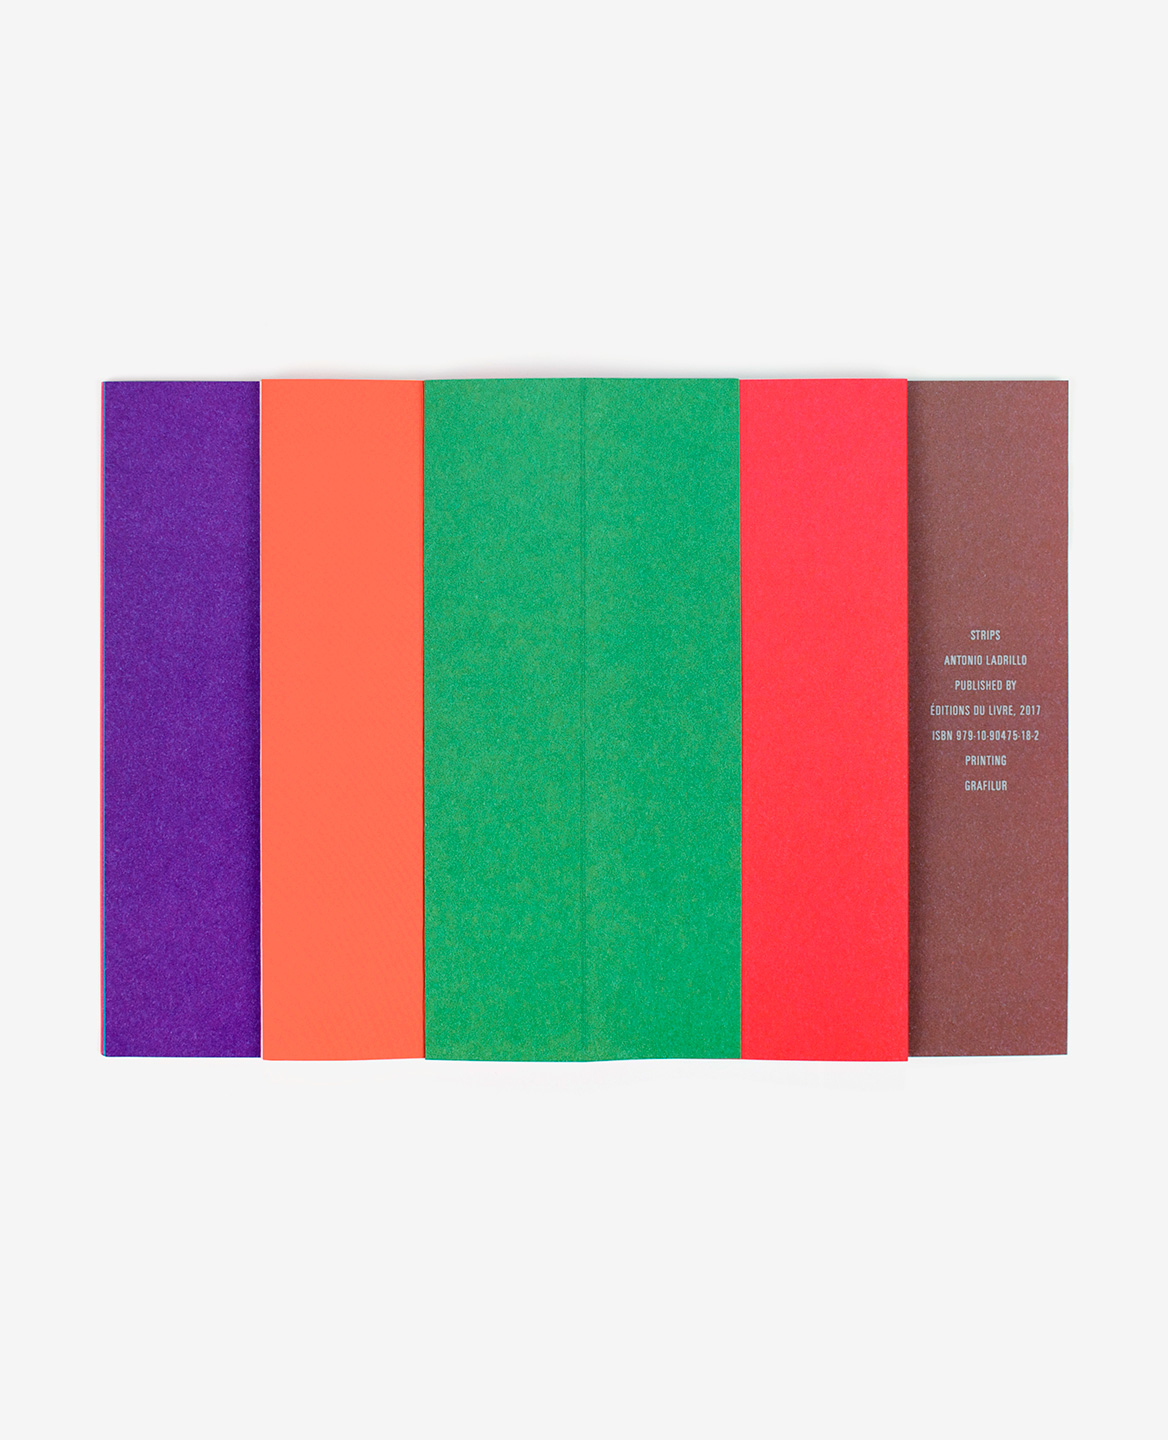 Bandes violette, orange, verte, rouge et marron dans le livre Strips